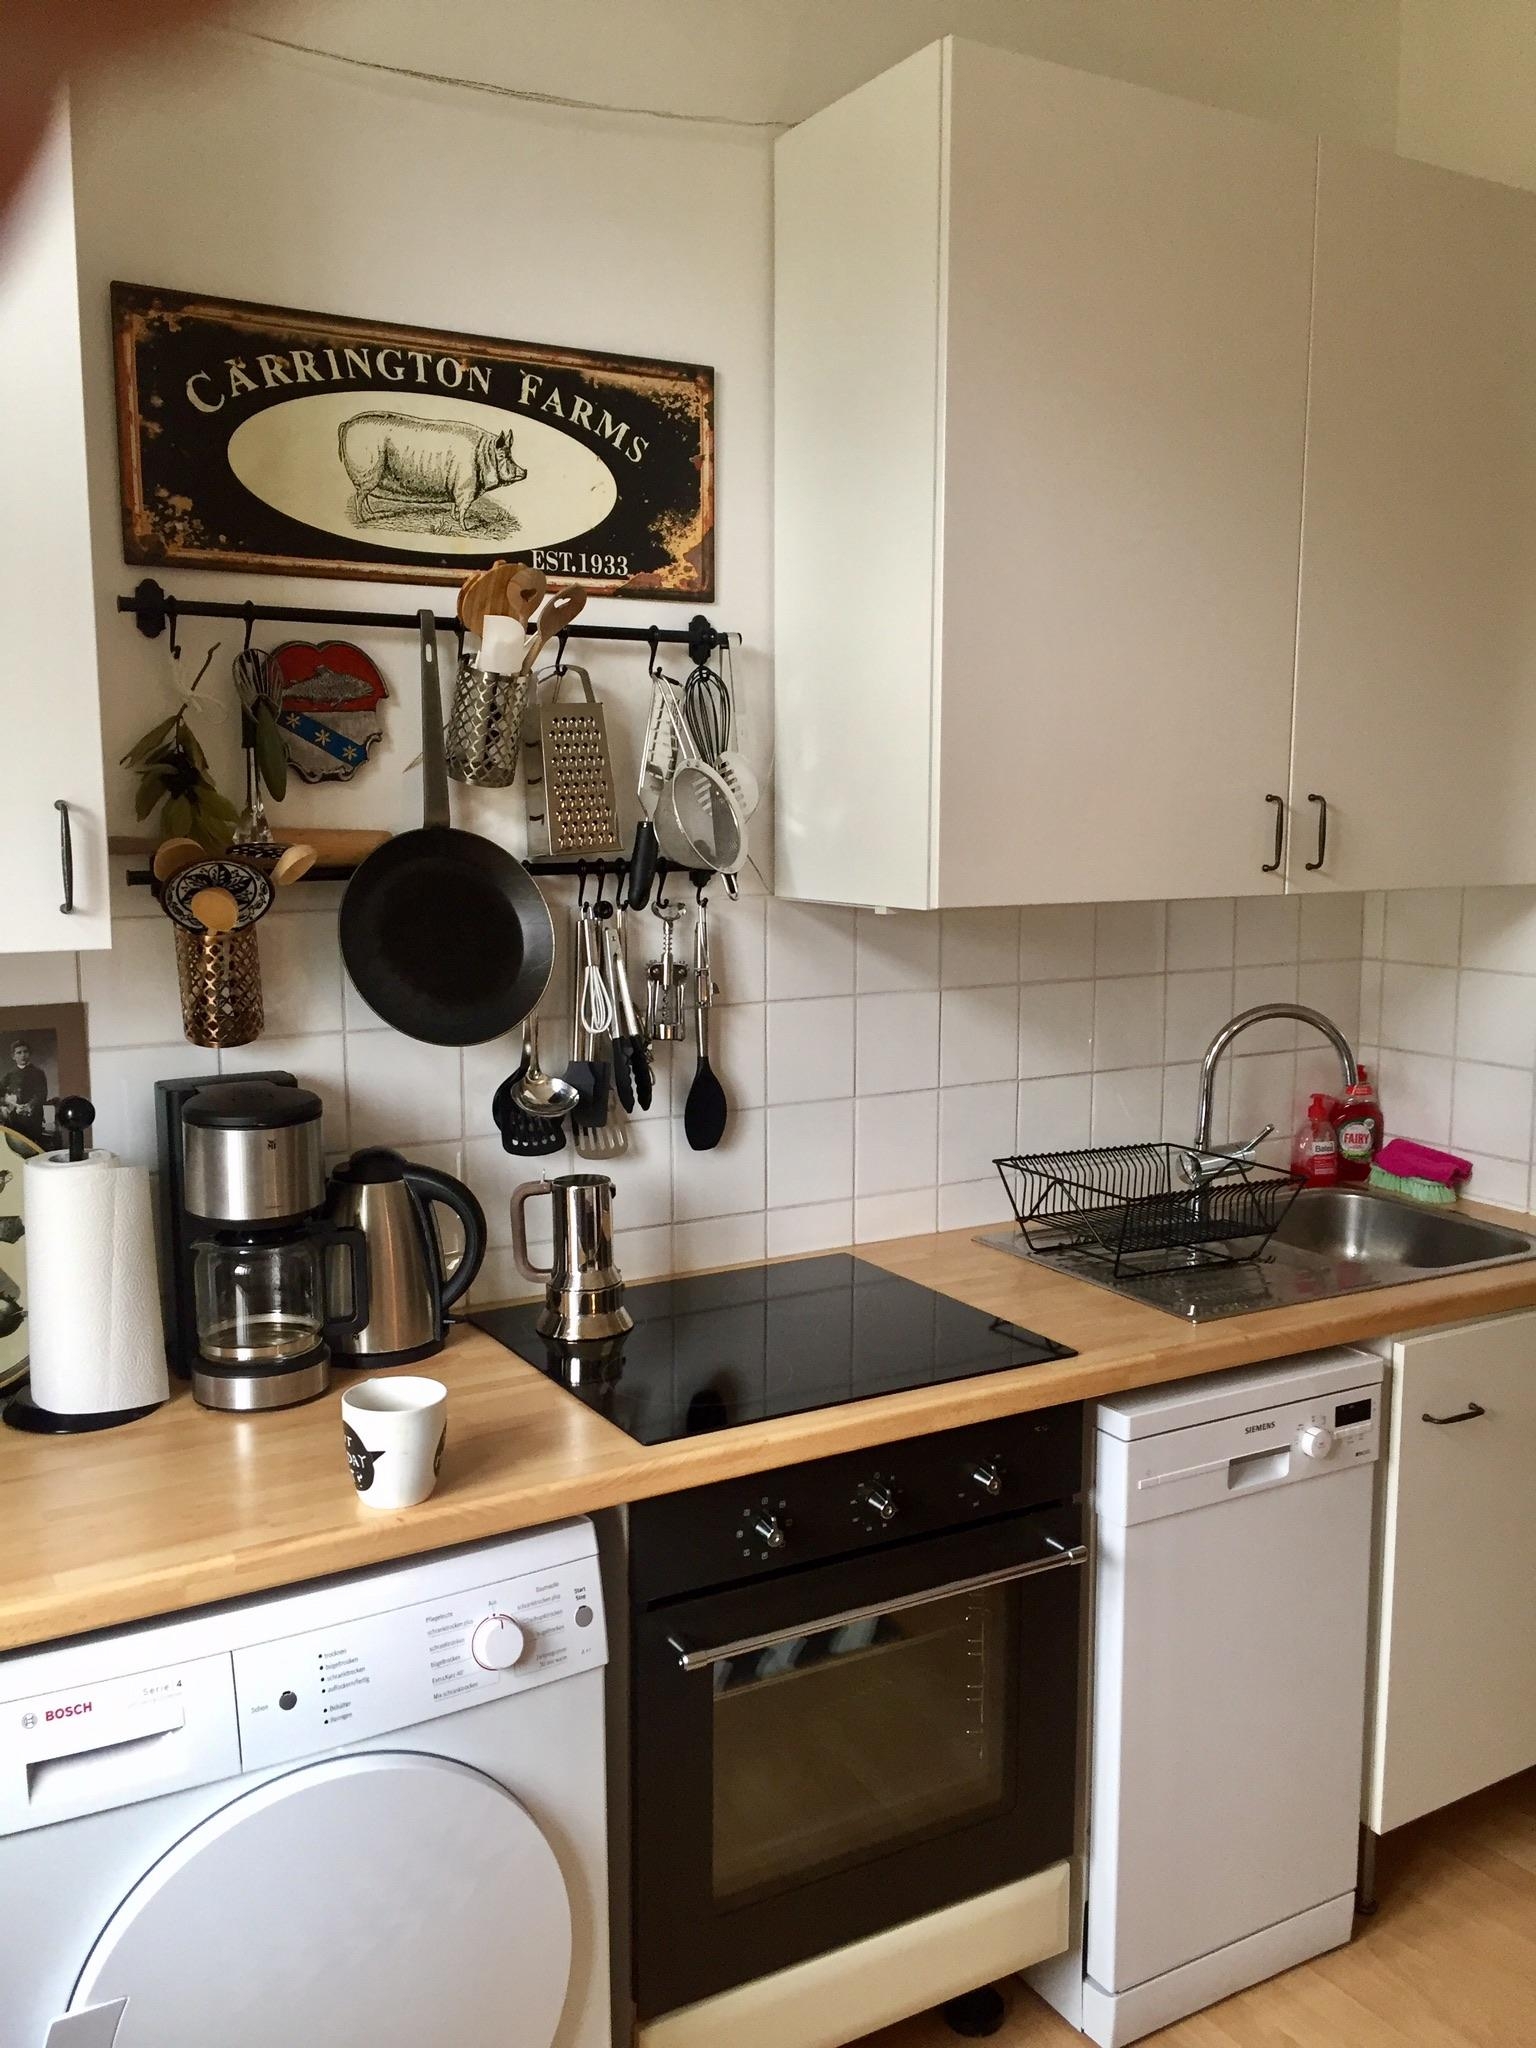 Unsere Retroküche ist noch im Entstehungsprozess #livingchallenge #küchendeko #wesco